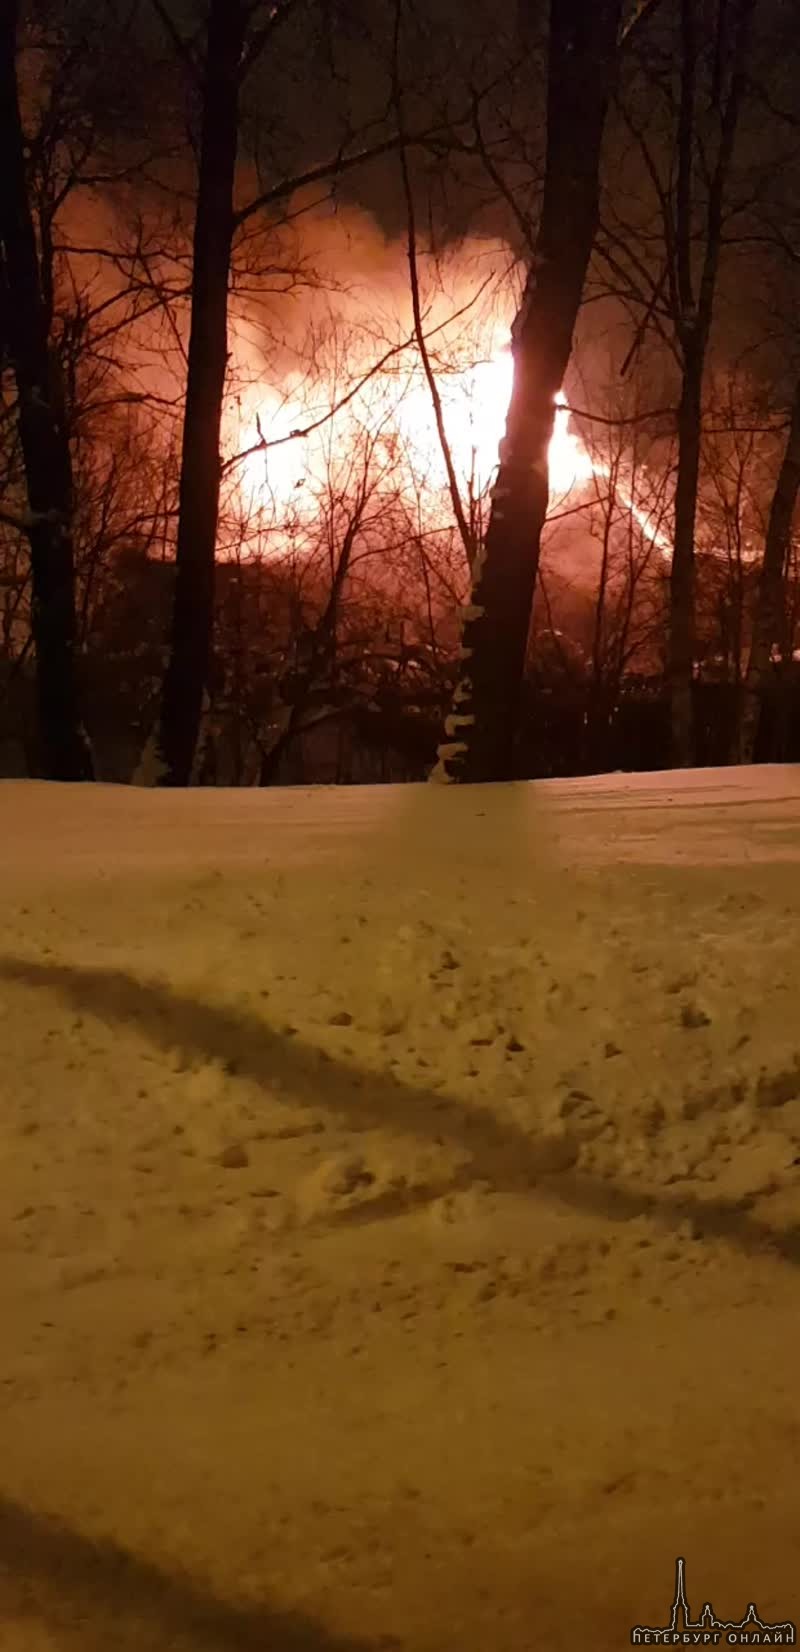 Пожар сегодня, 23 февраля в Красносельском районе Санкт-Петербурга полностью уничтожил частный дерев...